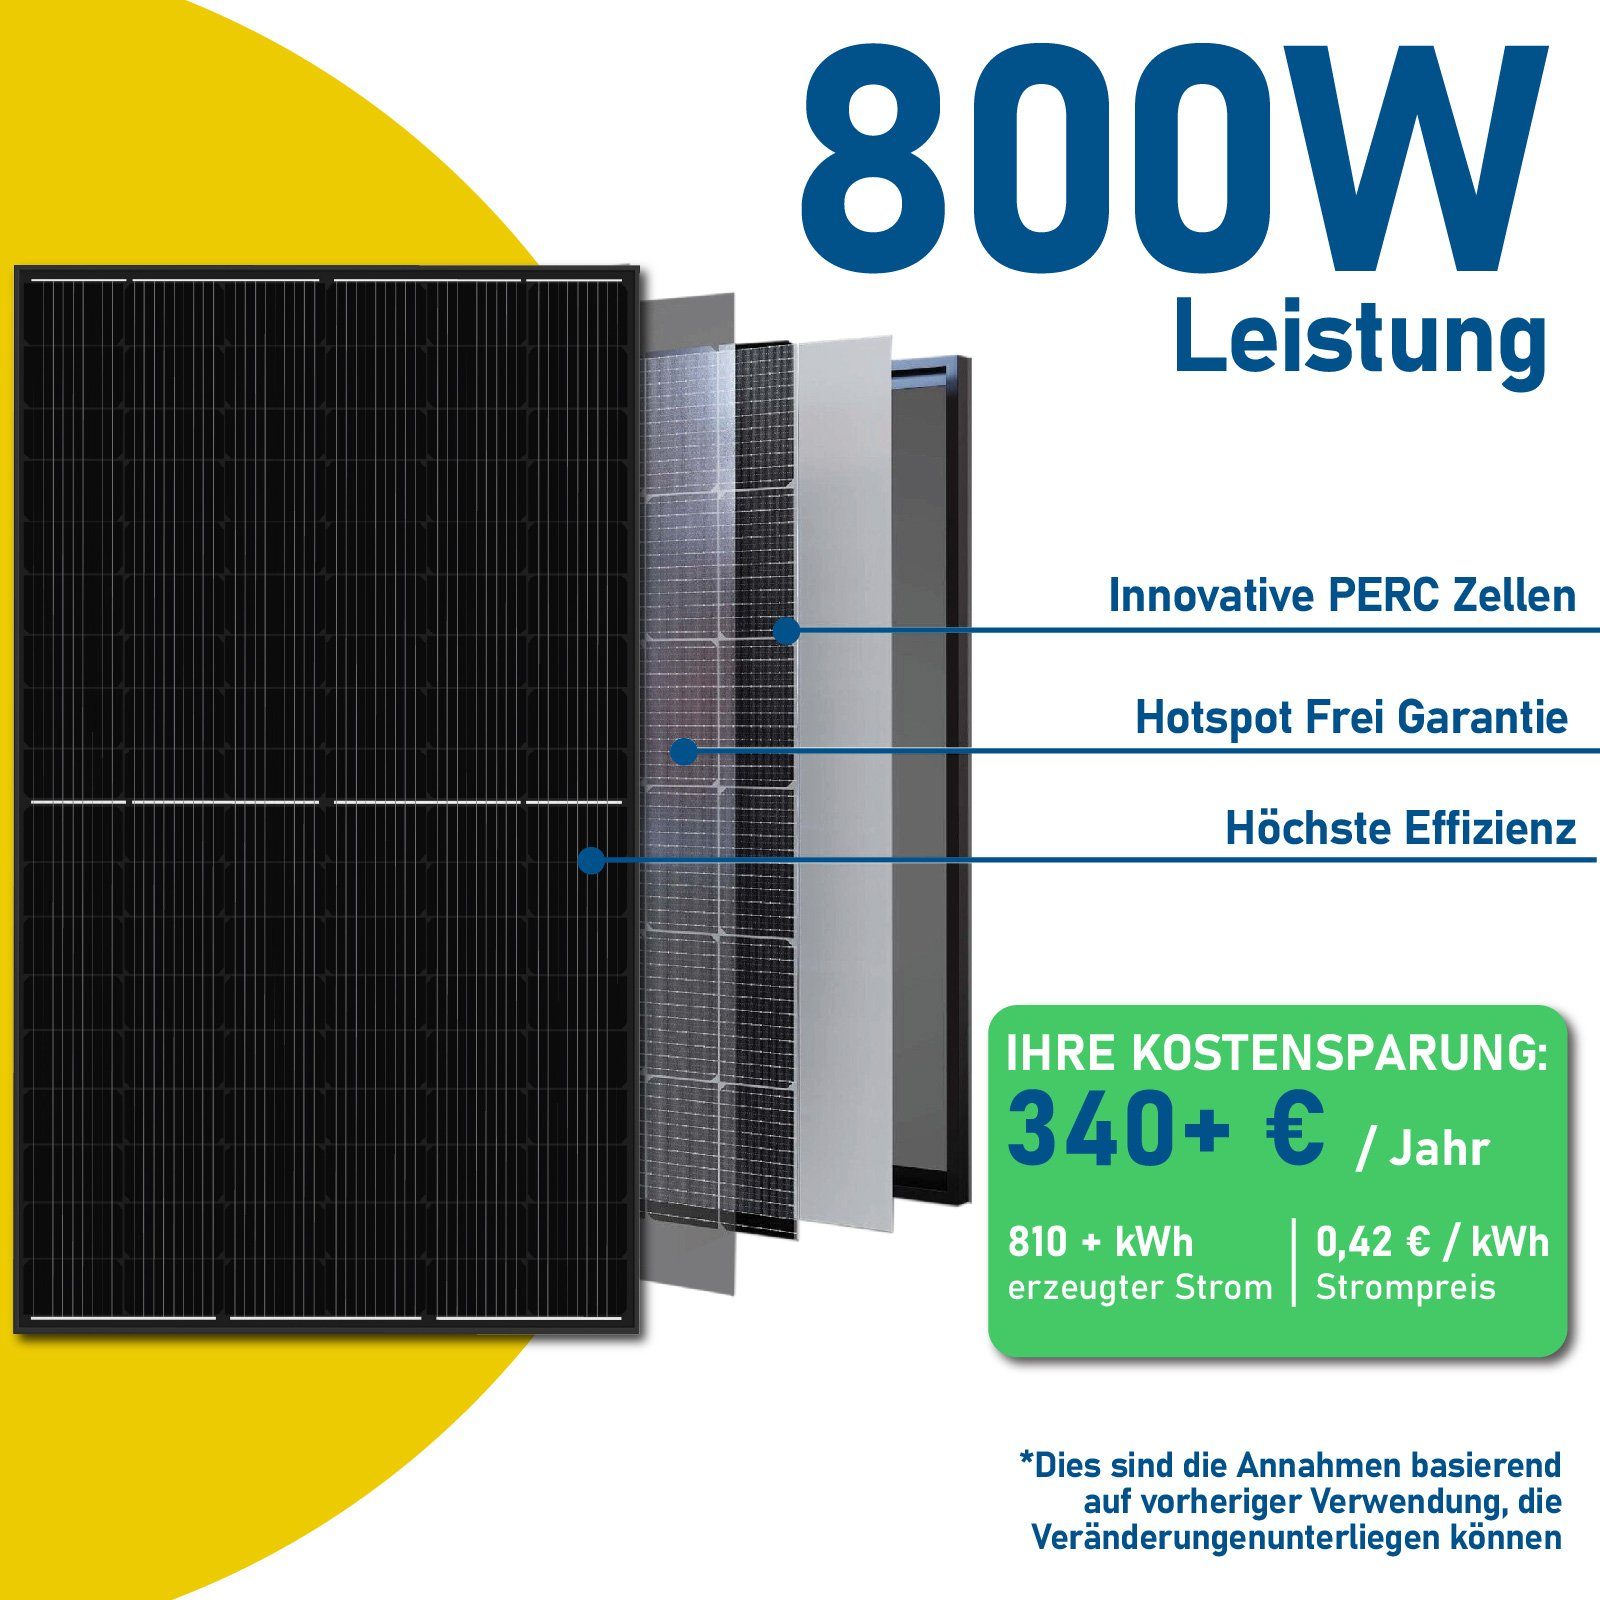 800W Mit Upgradefähiger Balkonkraftwerk, Wechselrichter Balkongeländer EPP.Solar Hypontech 800W PV-Montage, WIFI Eckig Photovoltaik Solaranlage